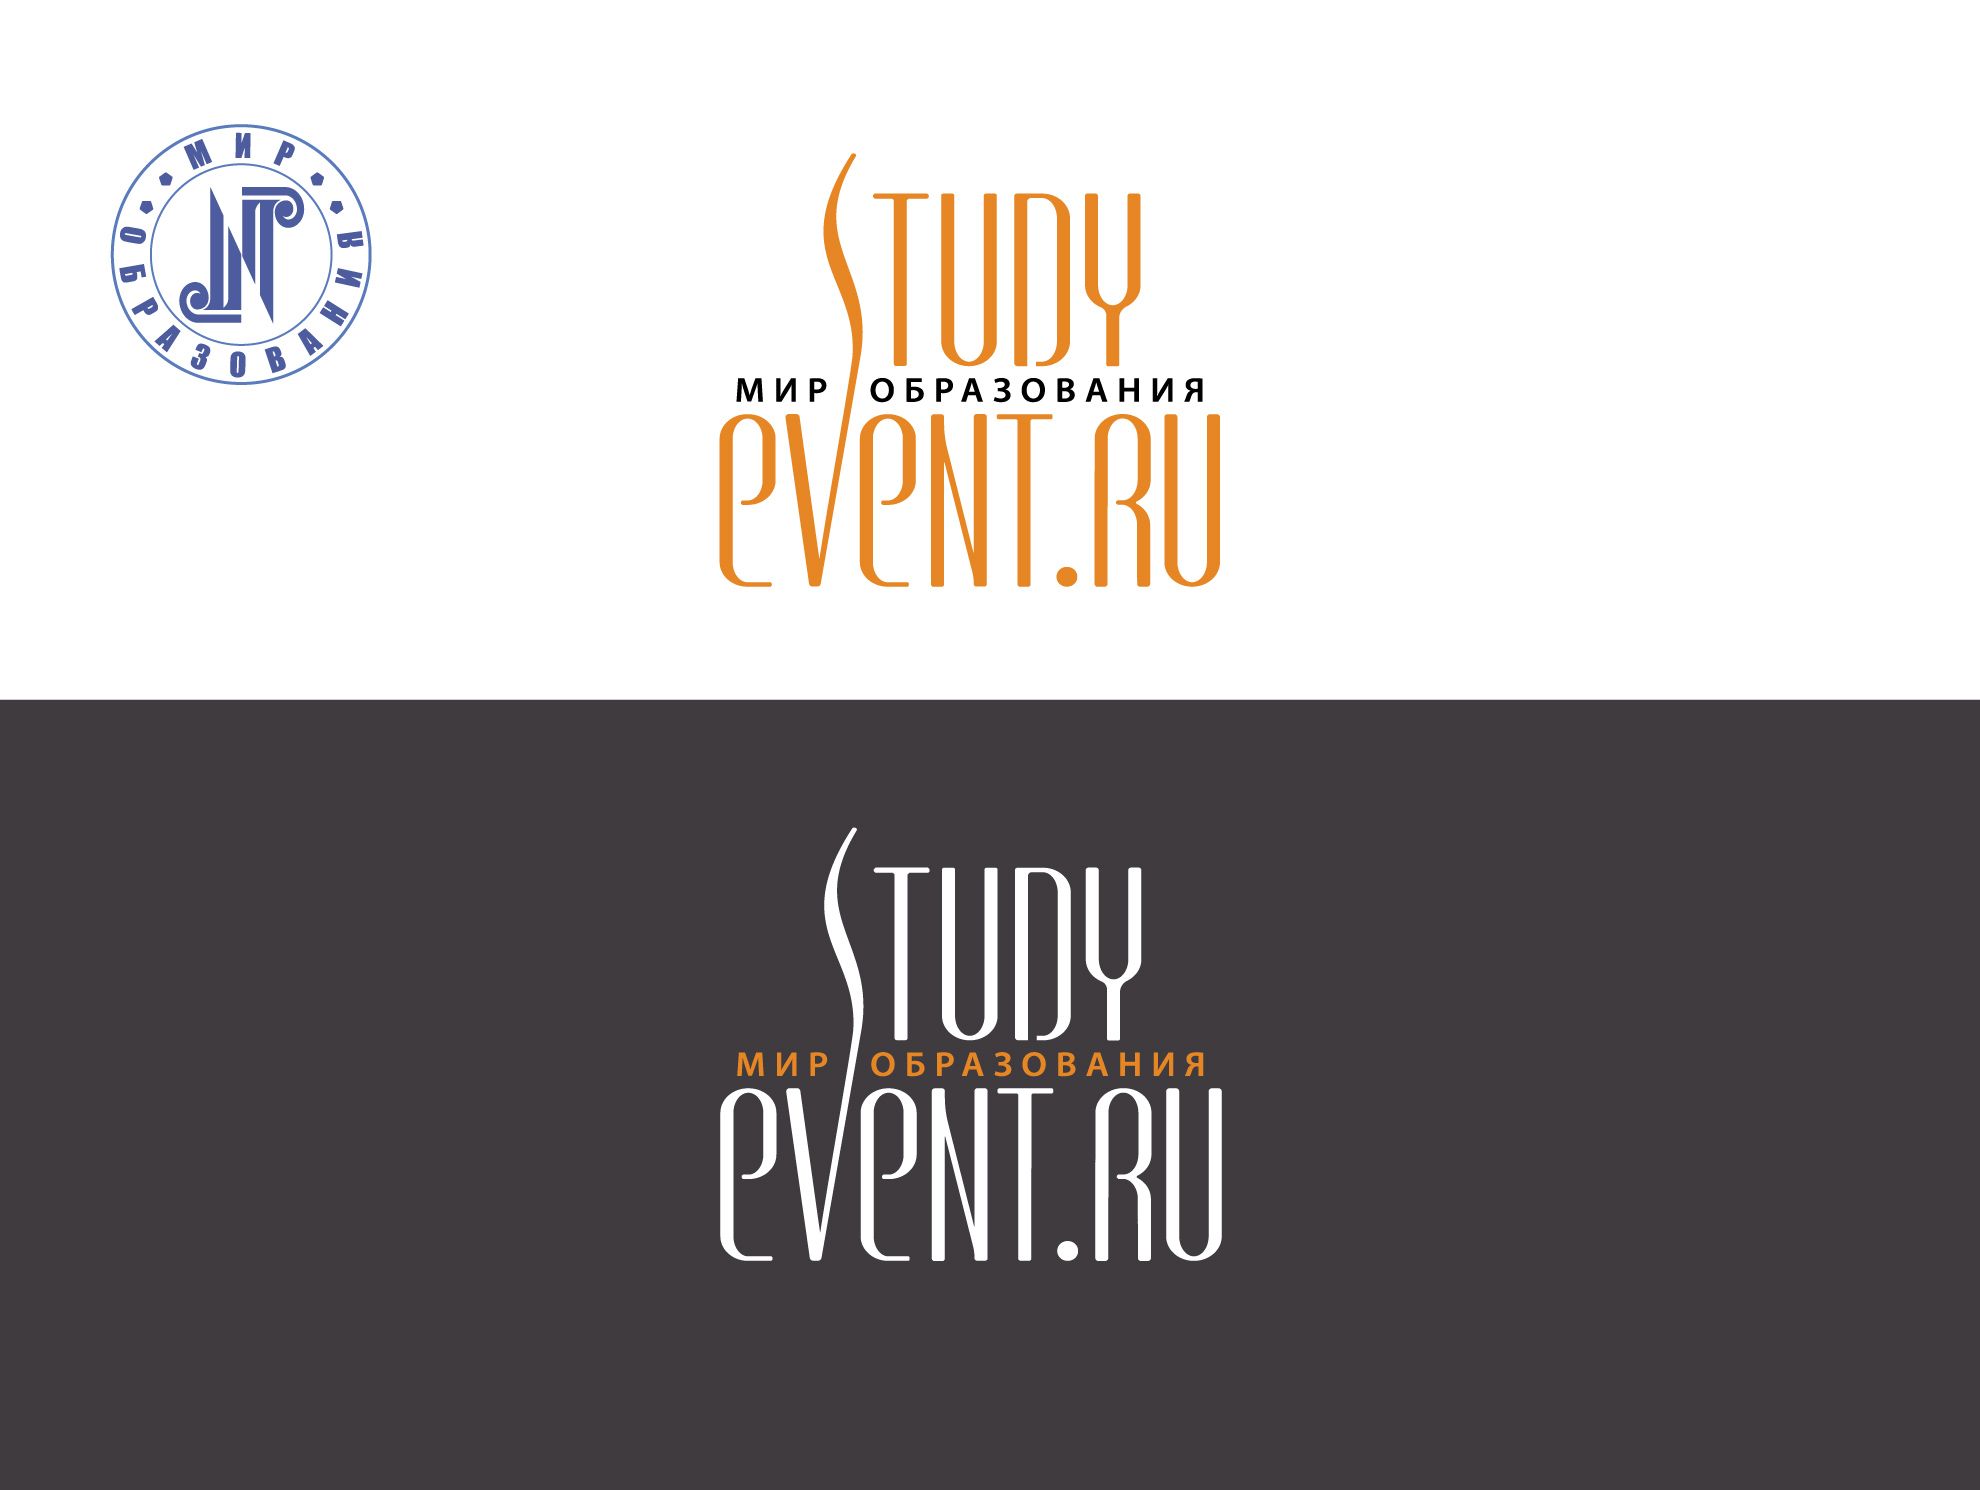 Логотип для StudyEvent.ru - дизайнер -lilit53_